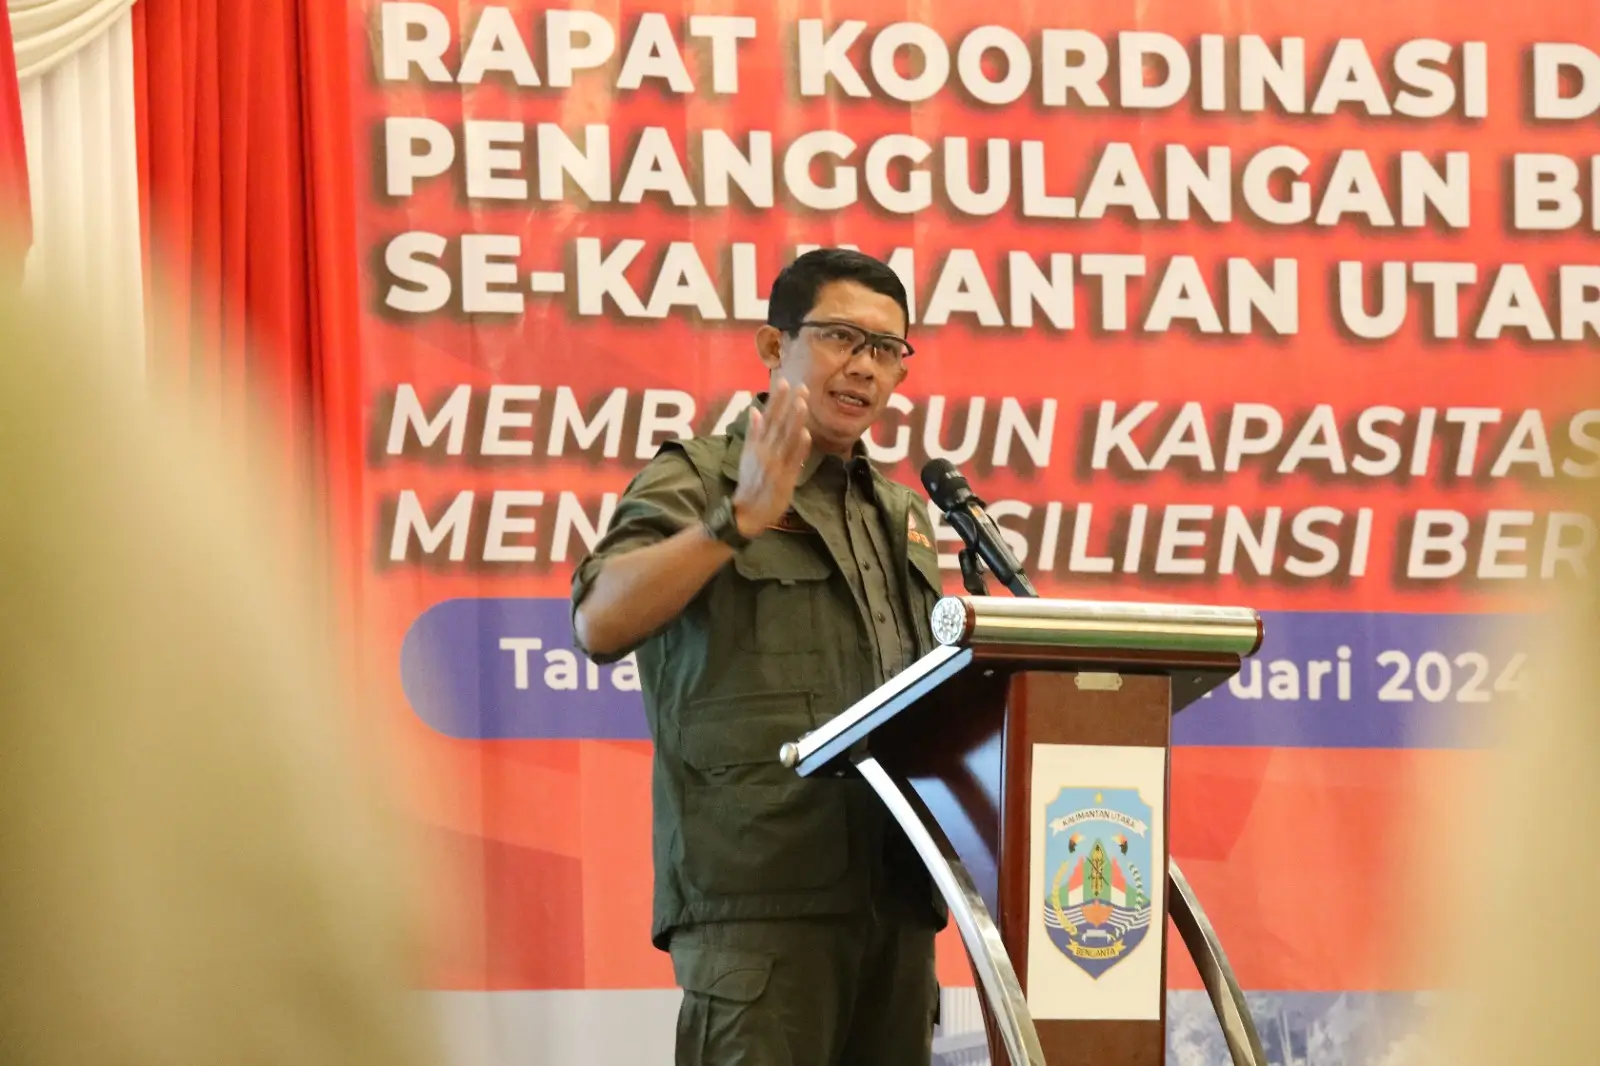 Kepala BNPB Letjen TNI Suharyanto, S.Sos., M.M. saat menjadi pembicara pada rapat koordinasi penanggulangan bencana dengan peserta perwakilan Badan Penanggulangan Bencana Daerah (BPBD) serta organisasi perangkat daerah lainnya se-Kalimantan Utara dilakukan di Kota Tarakan pada Rabu (7/2).